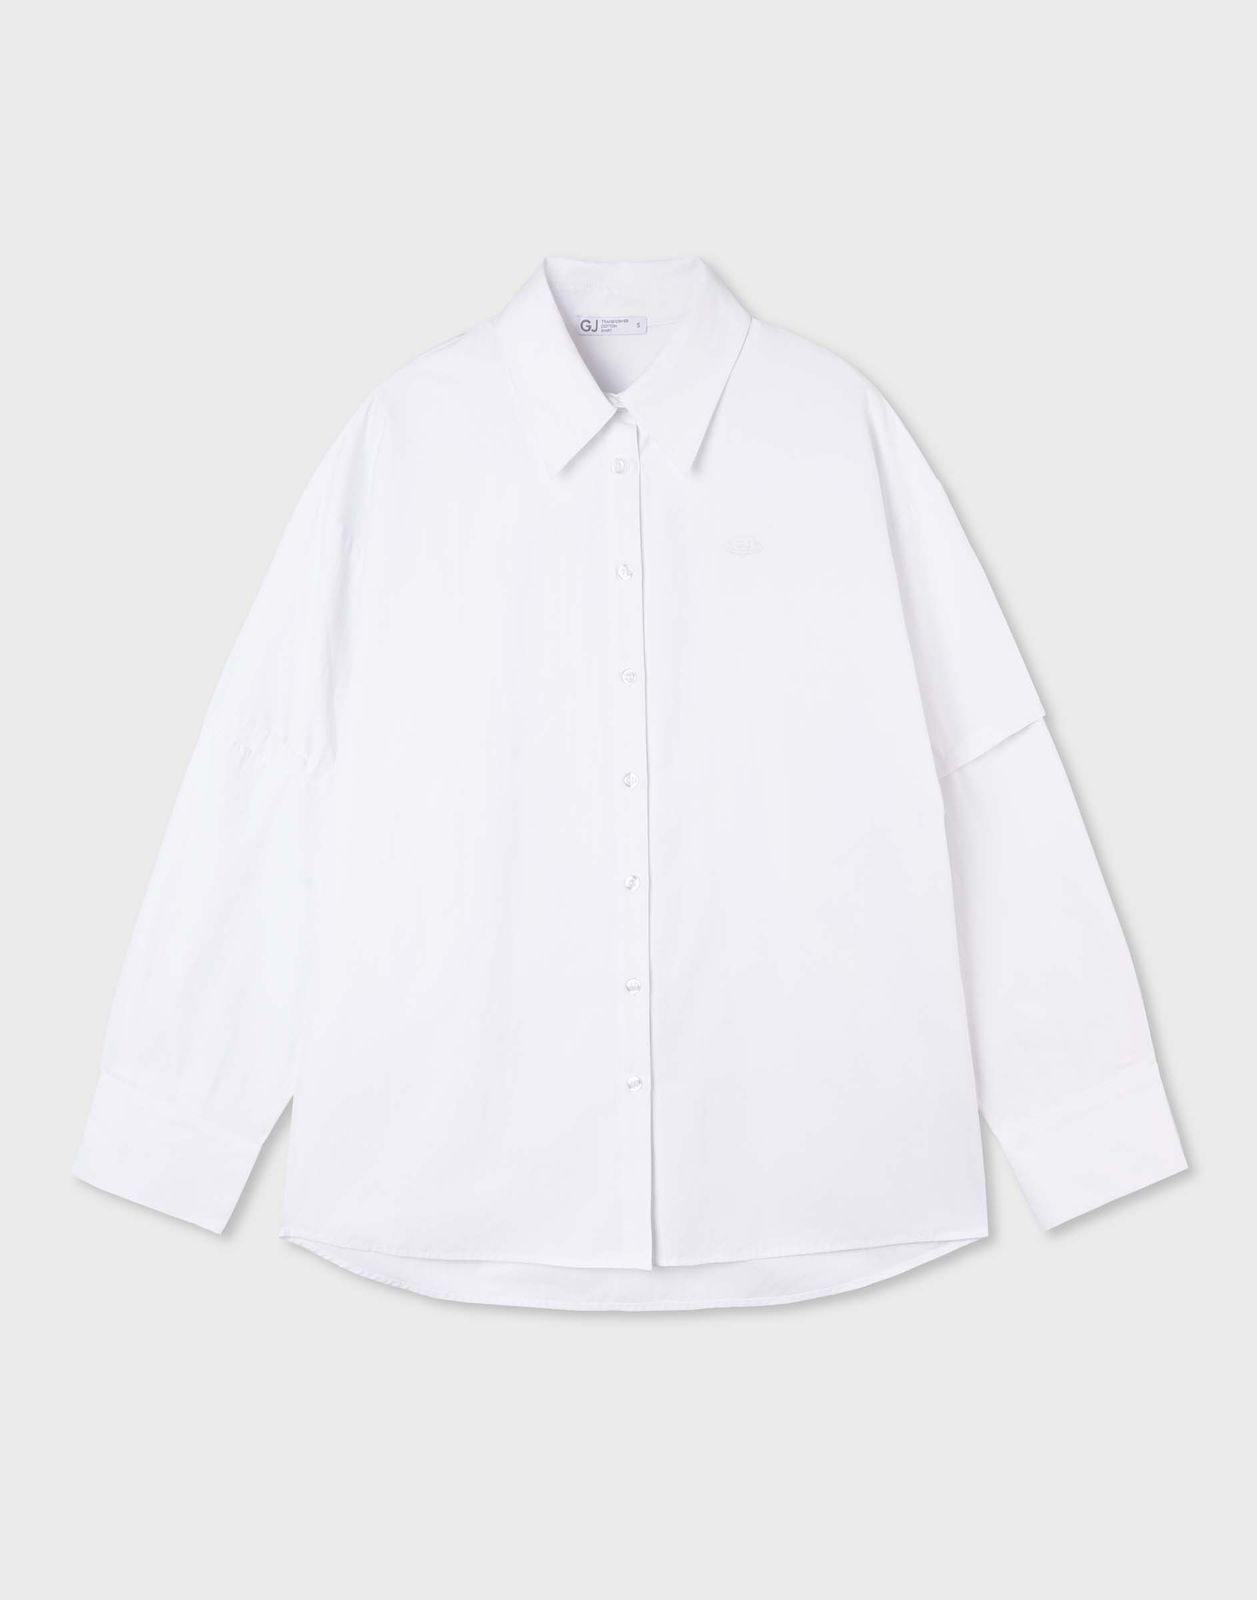 Рубашка женская Gloria Jeans GWT003635 белый XS/164